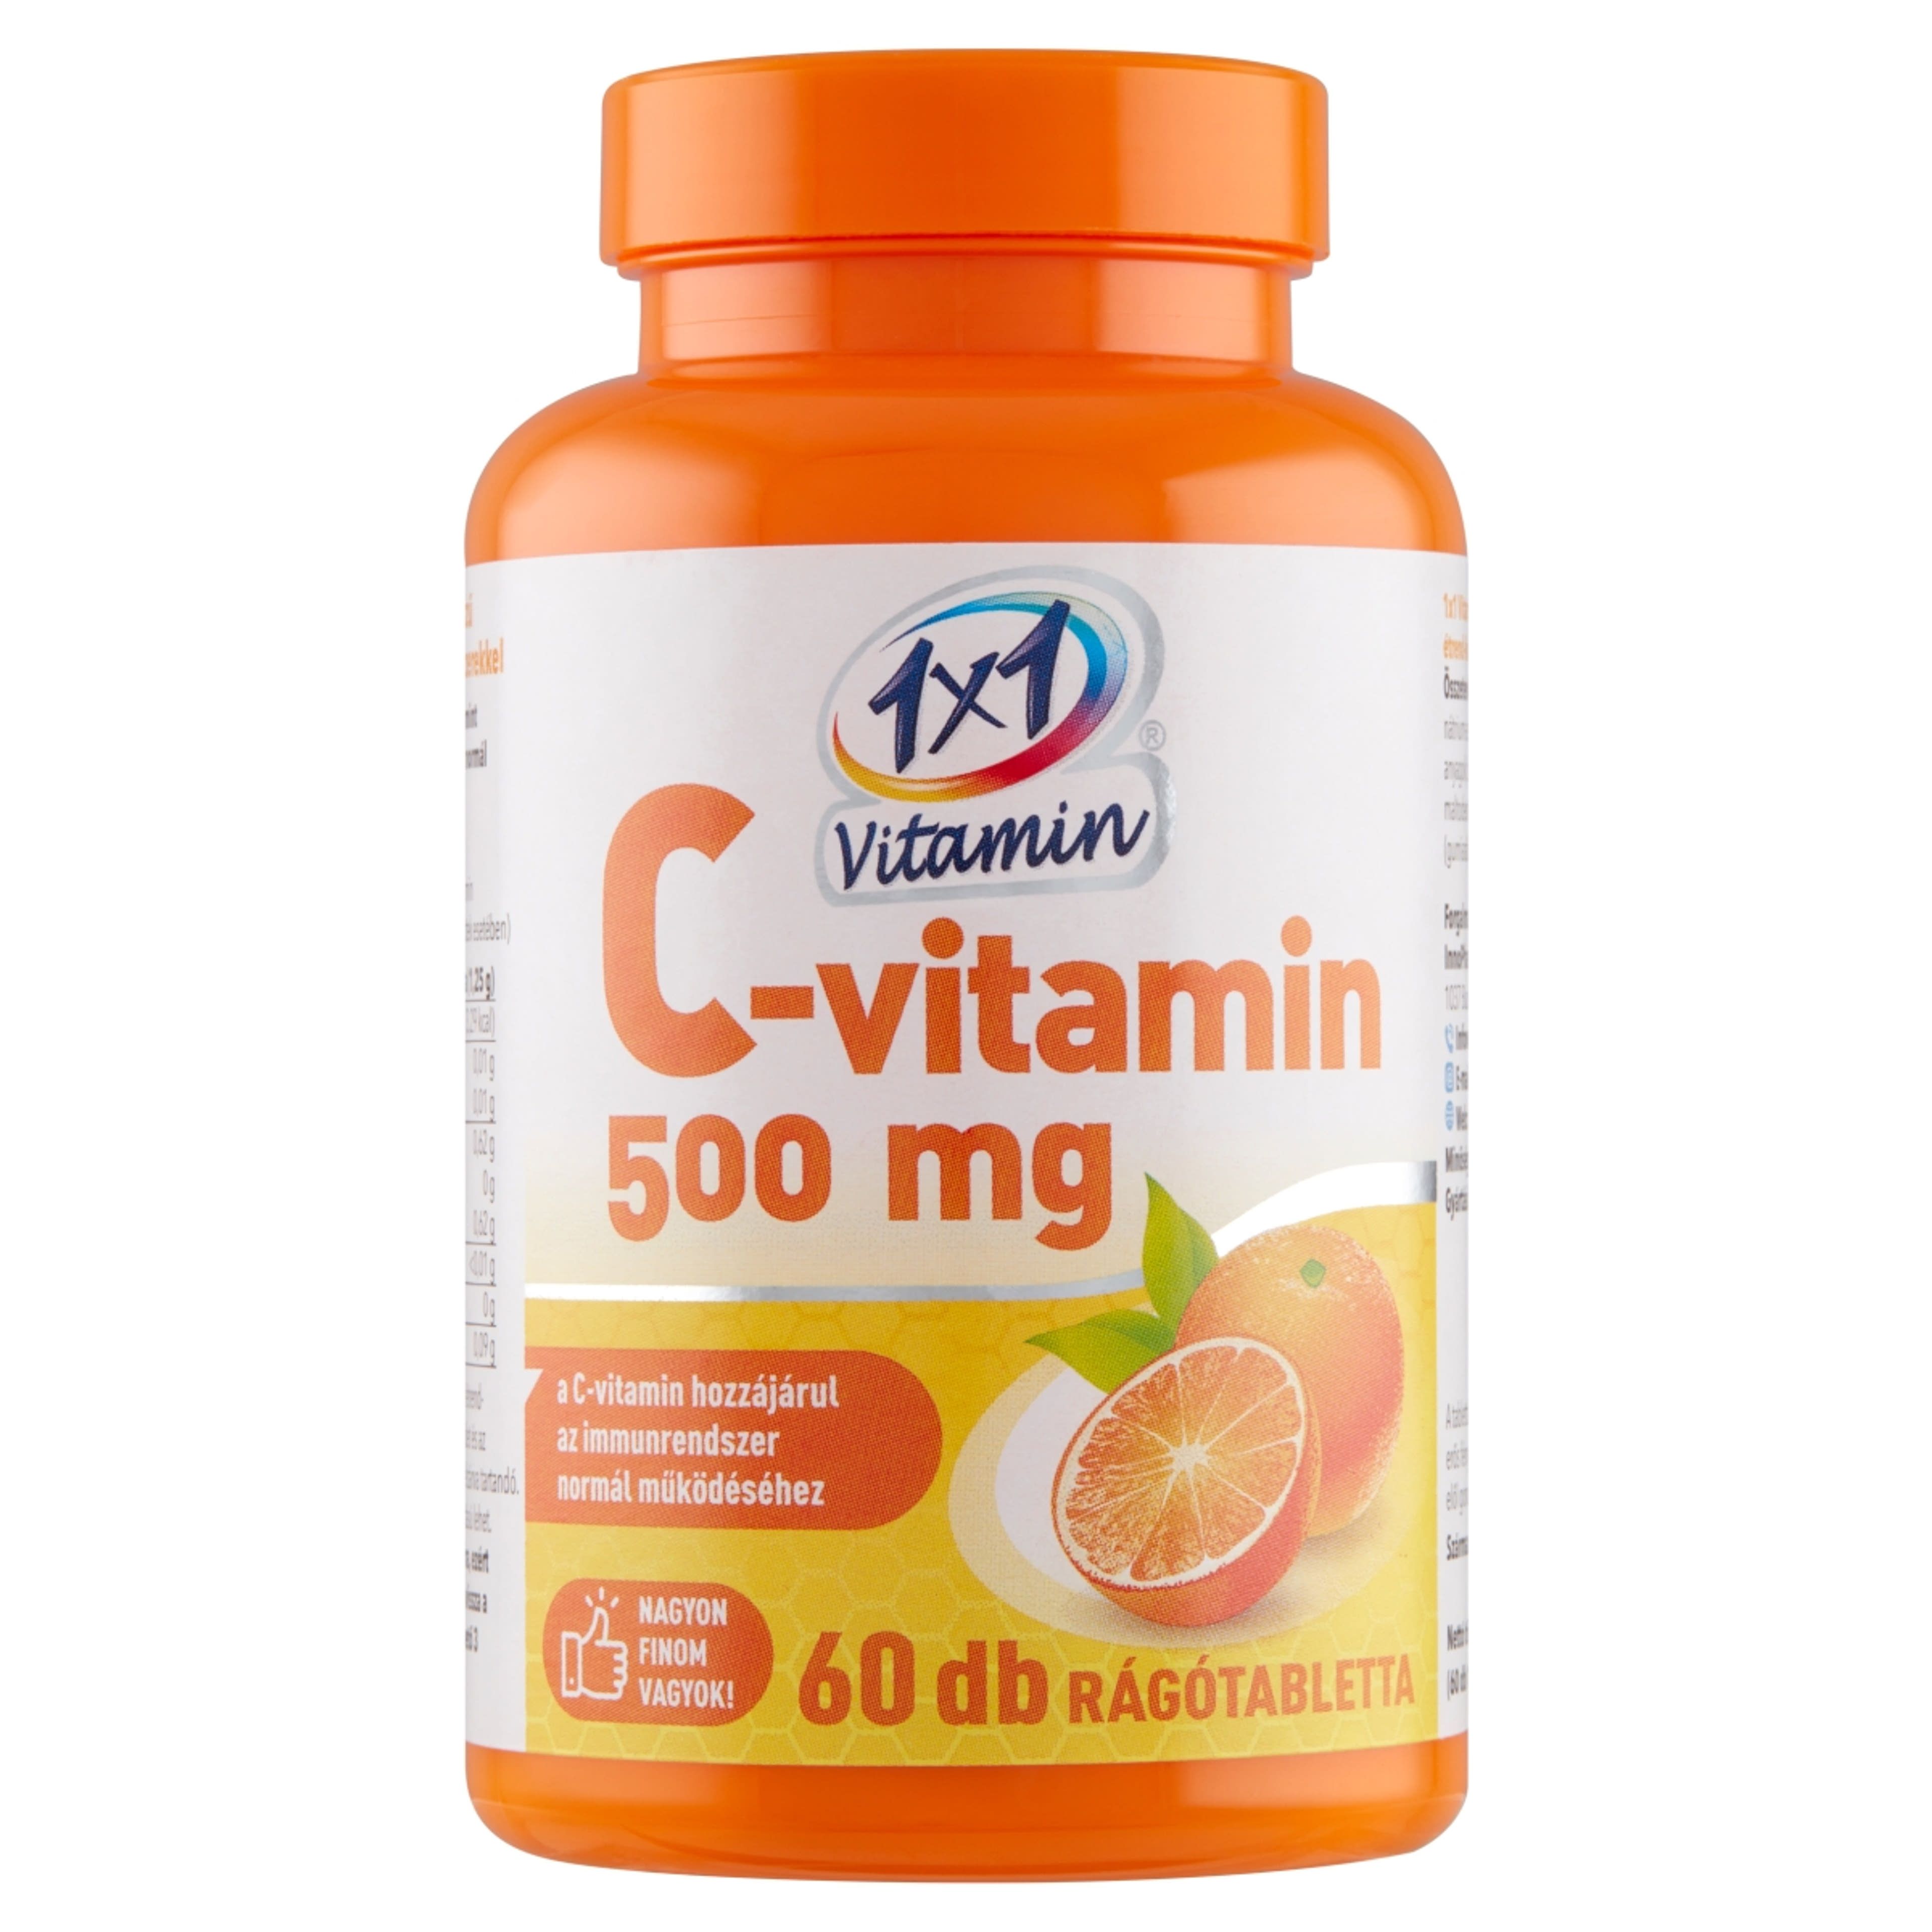 1x1 Vitamin C-Vitamin 500mg rágótabletta - 60 db